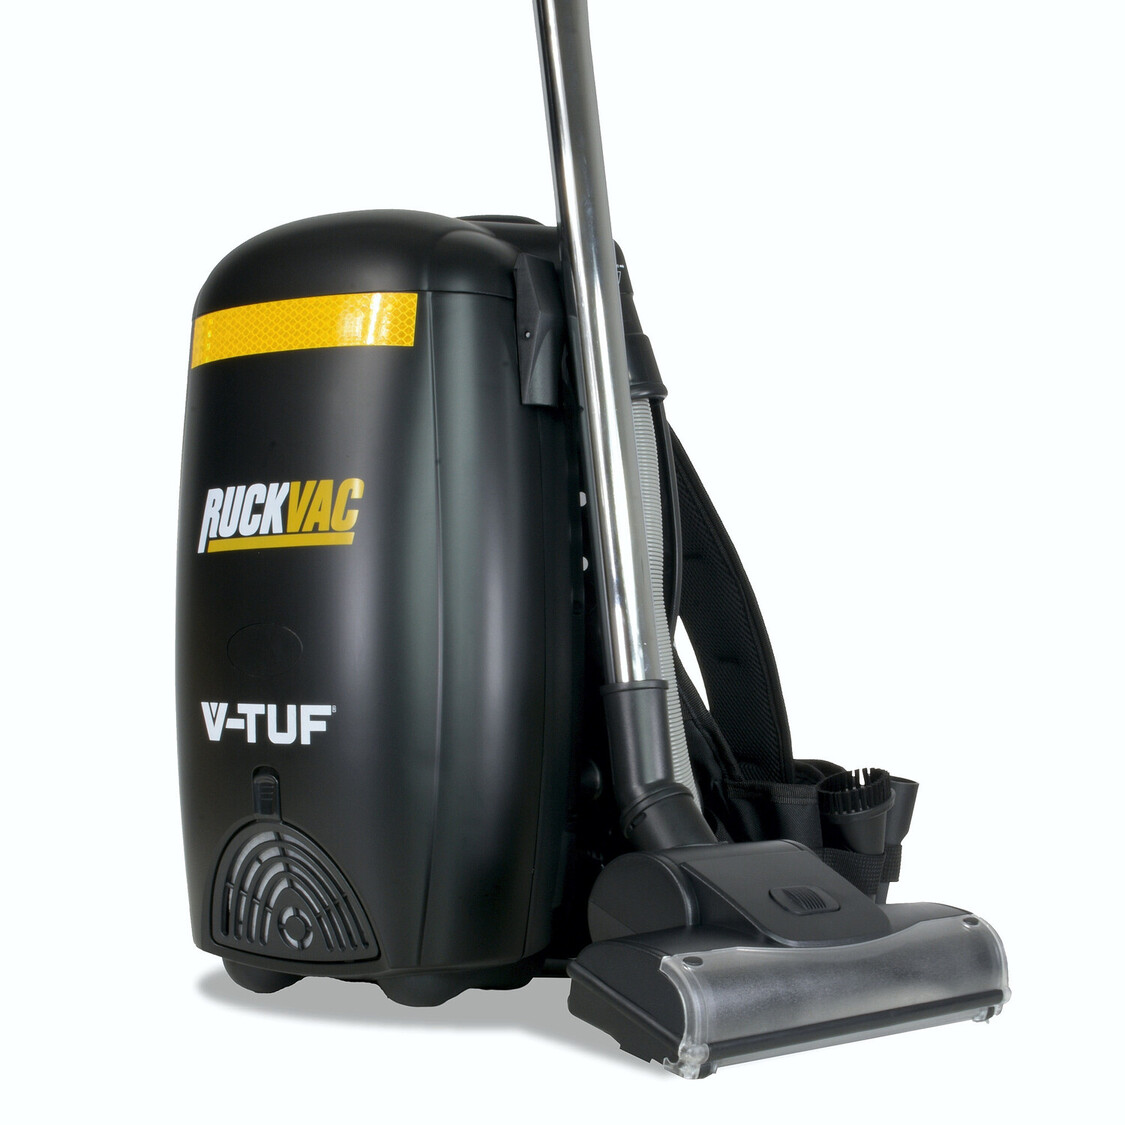 V-TUF RuckVac 110v Industrial Backpack Vacuum Cleaner - with Lung Safe Hepa Filtration